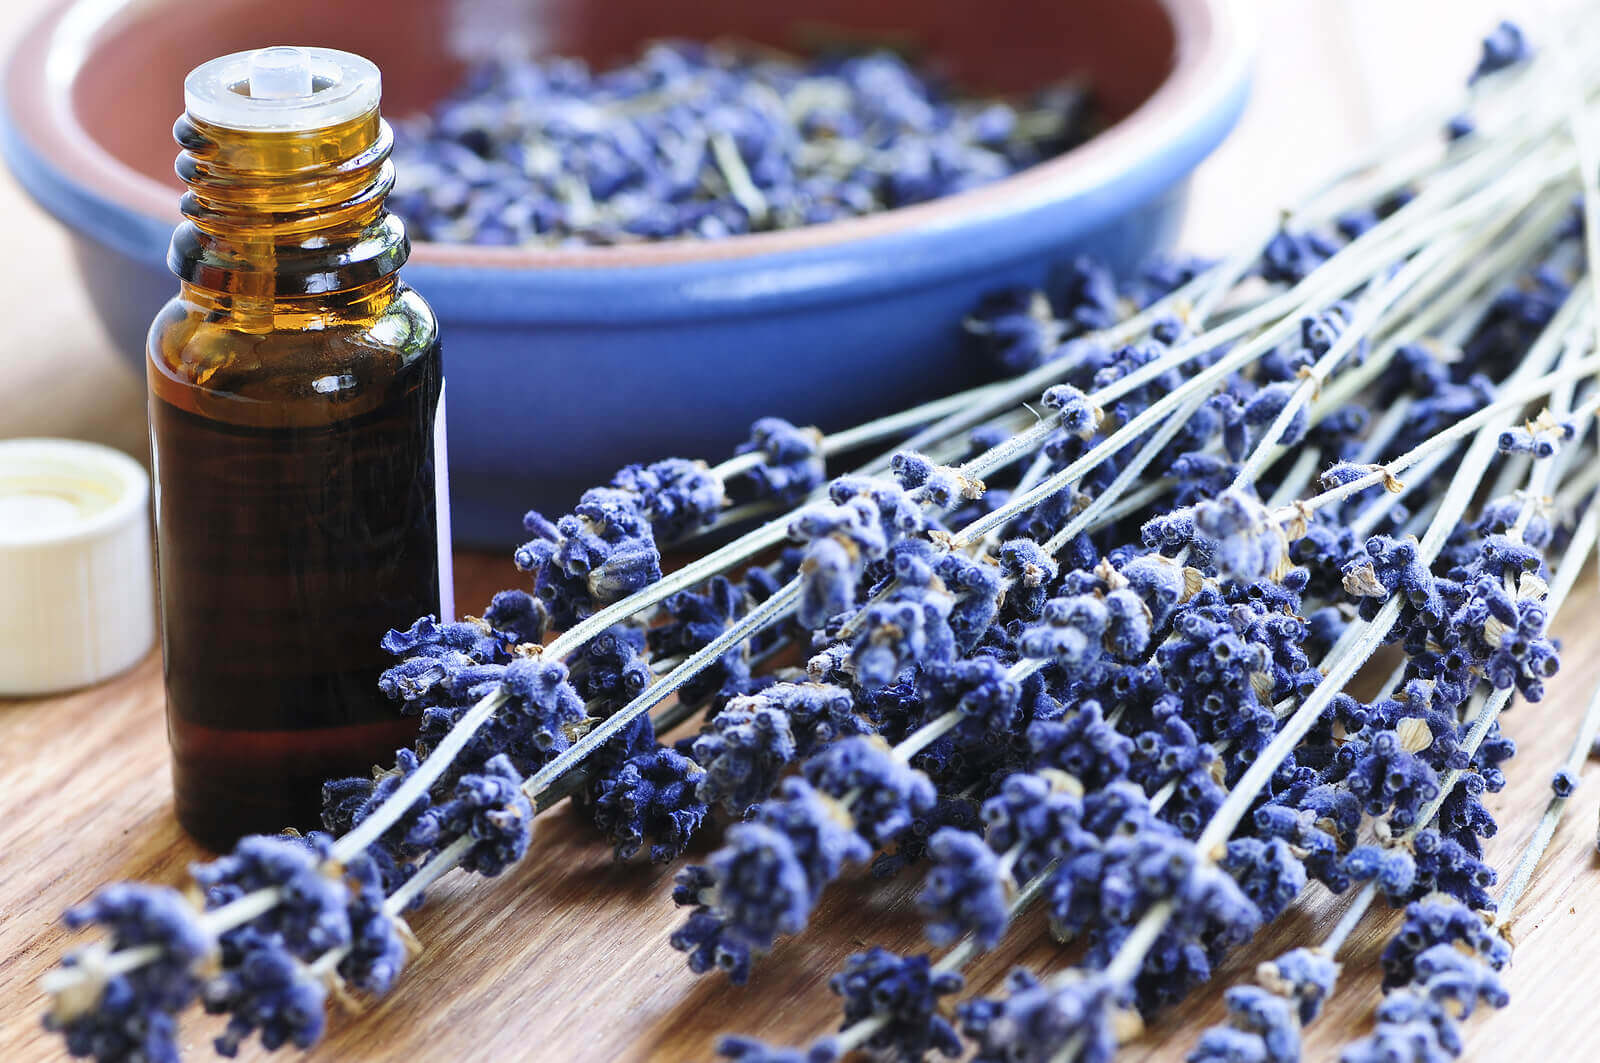 Natuurlijke remedies tegen pollenallergie zoals lavendelolie